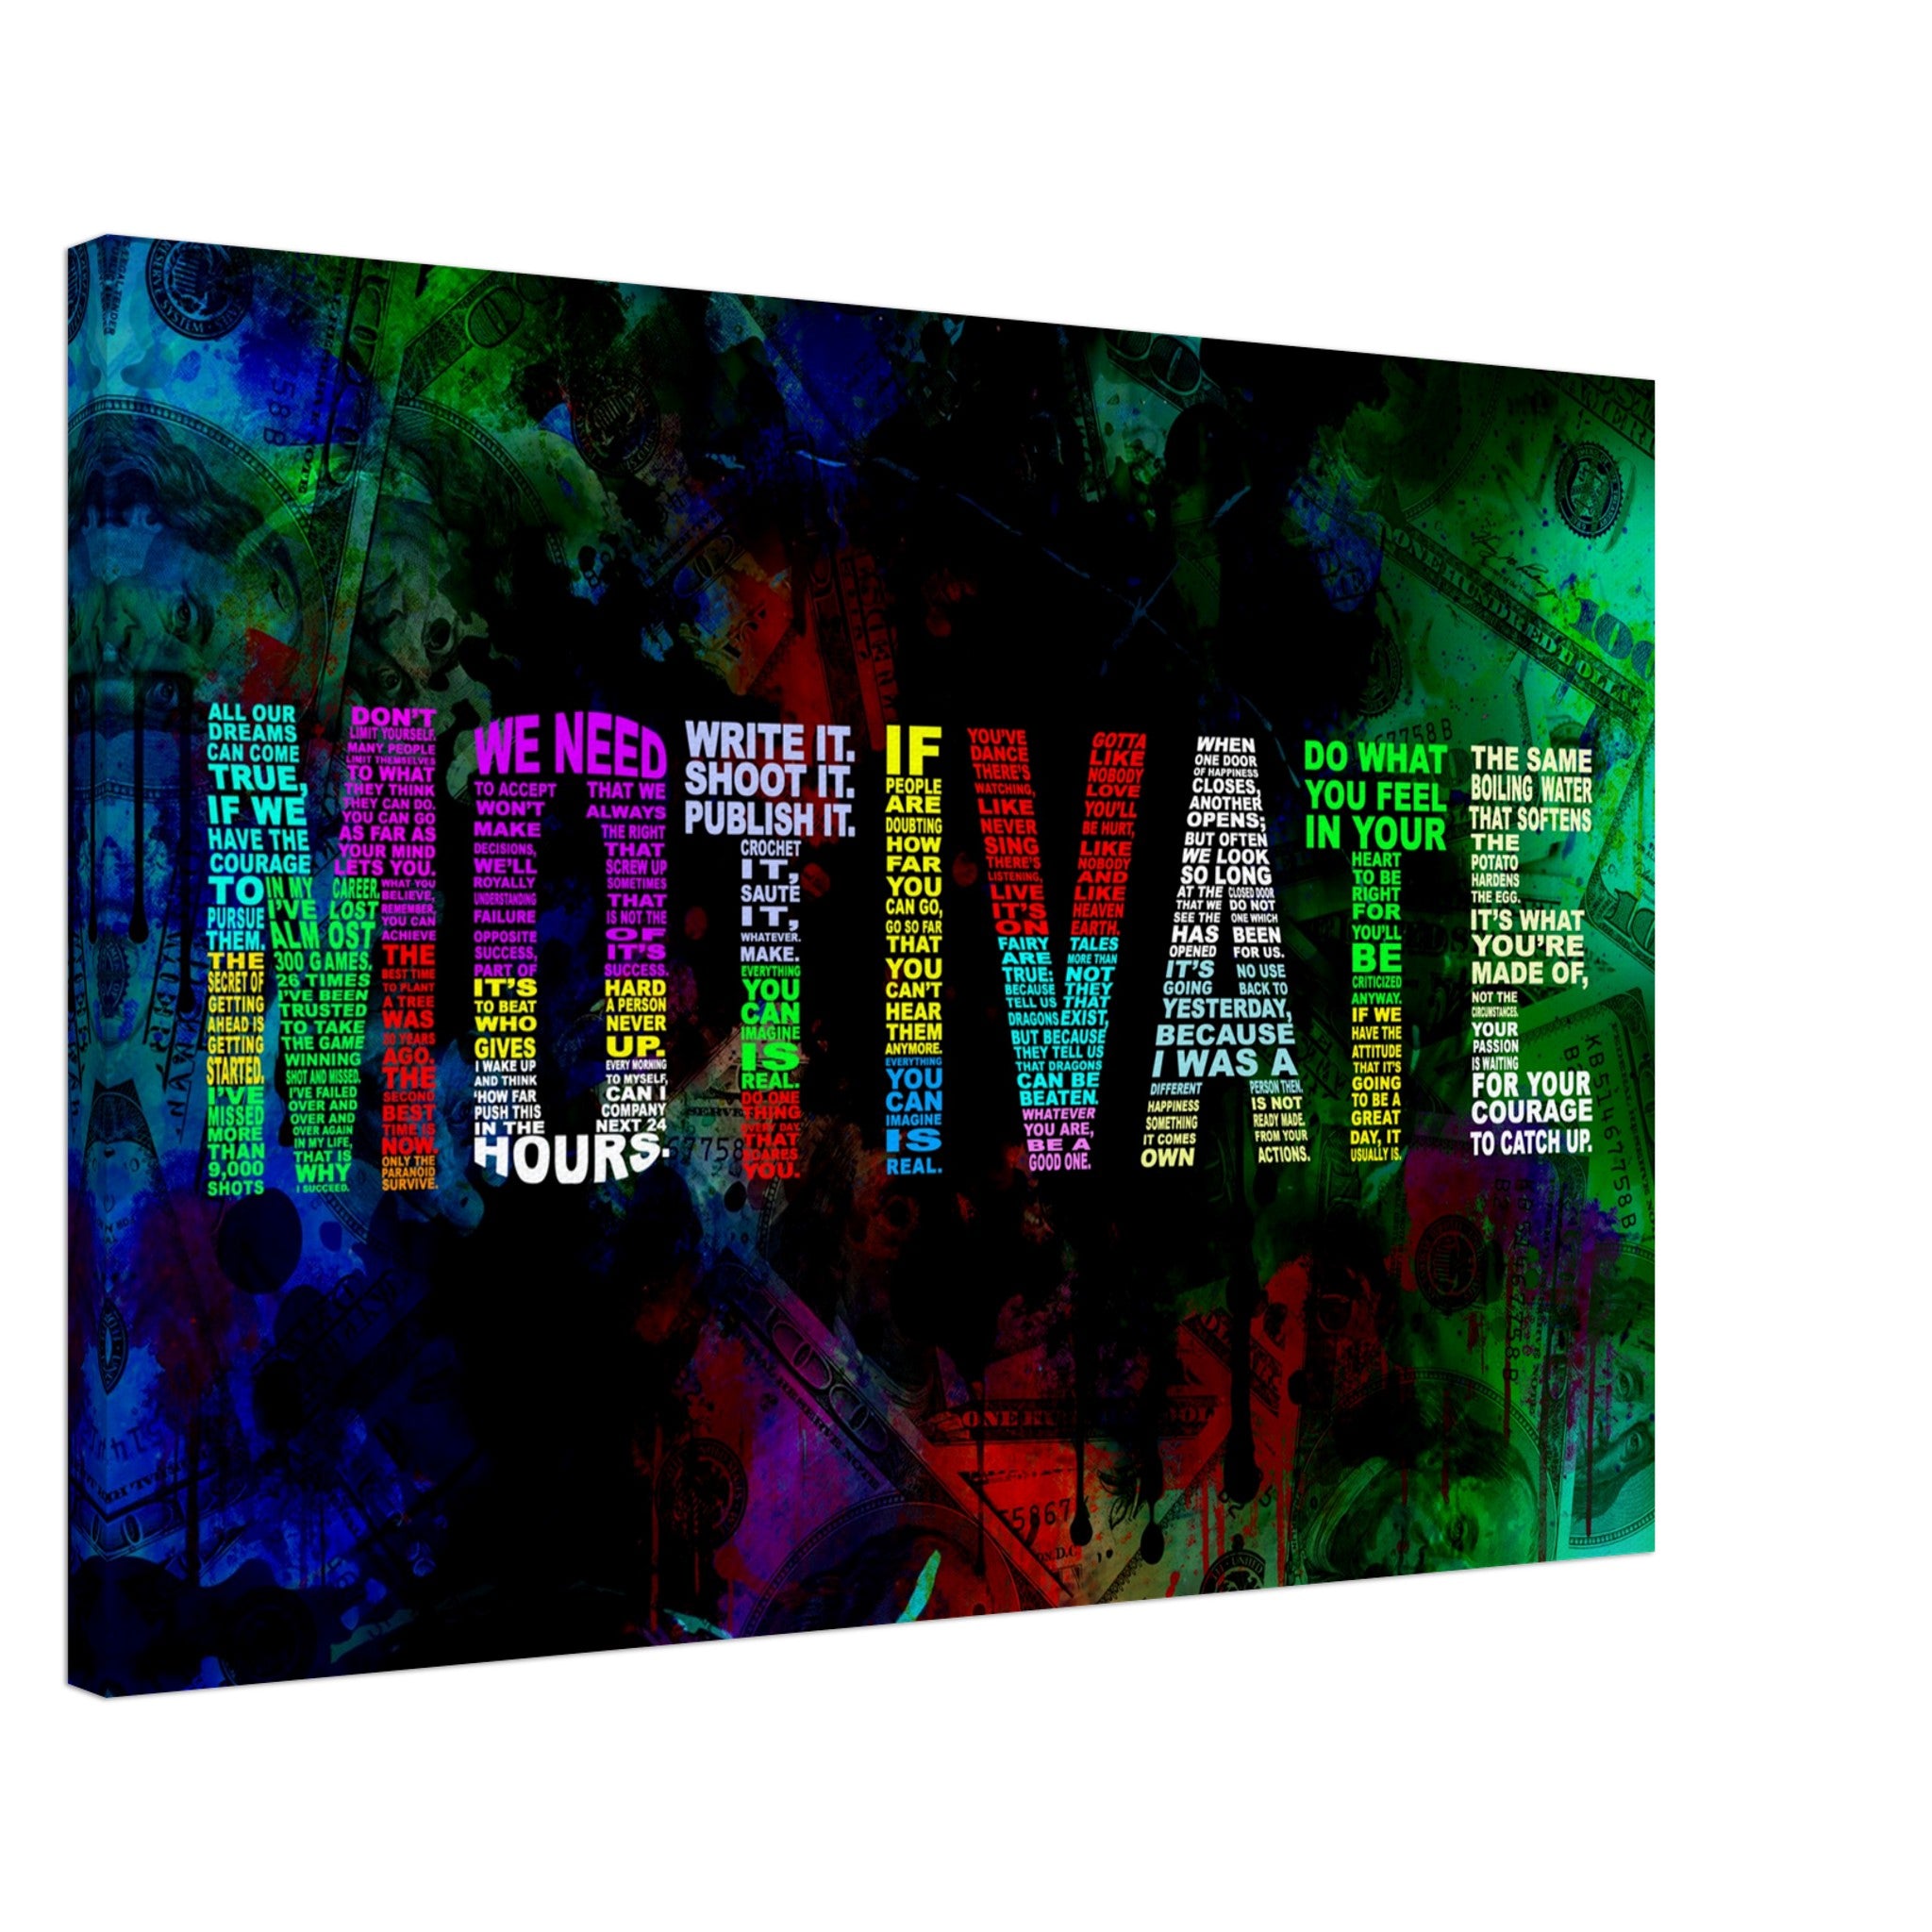 MOTIVATE (Colored)